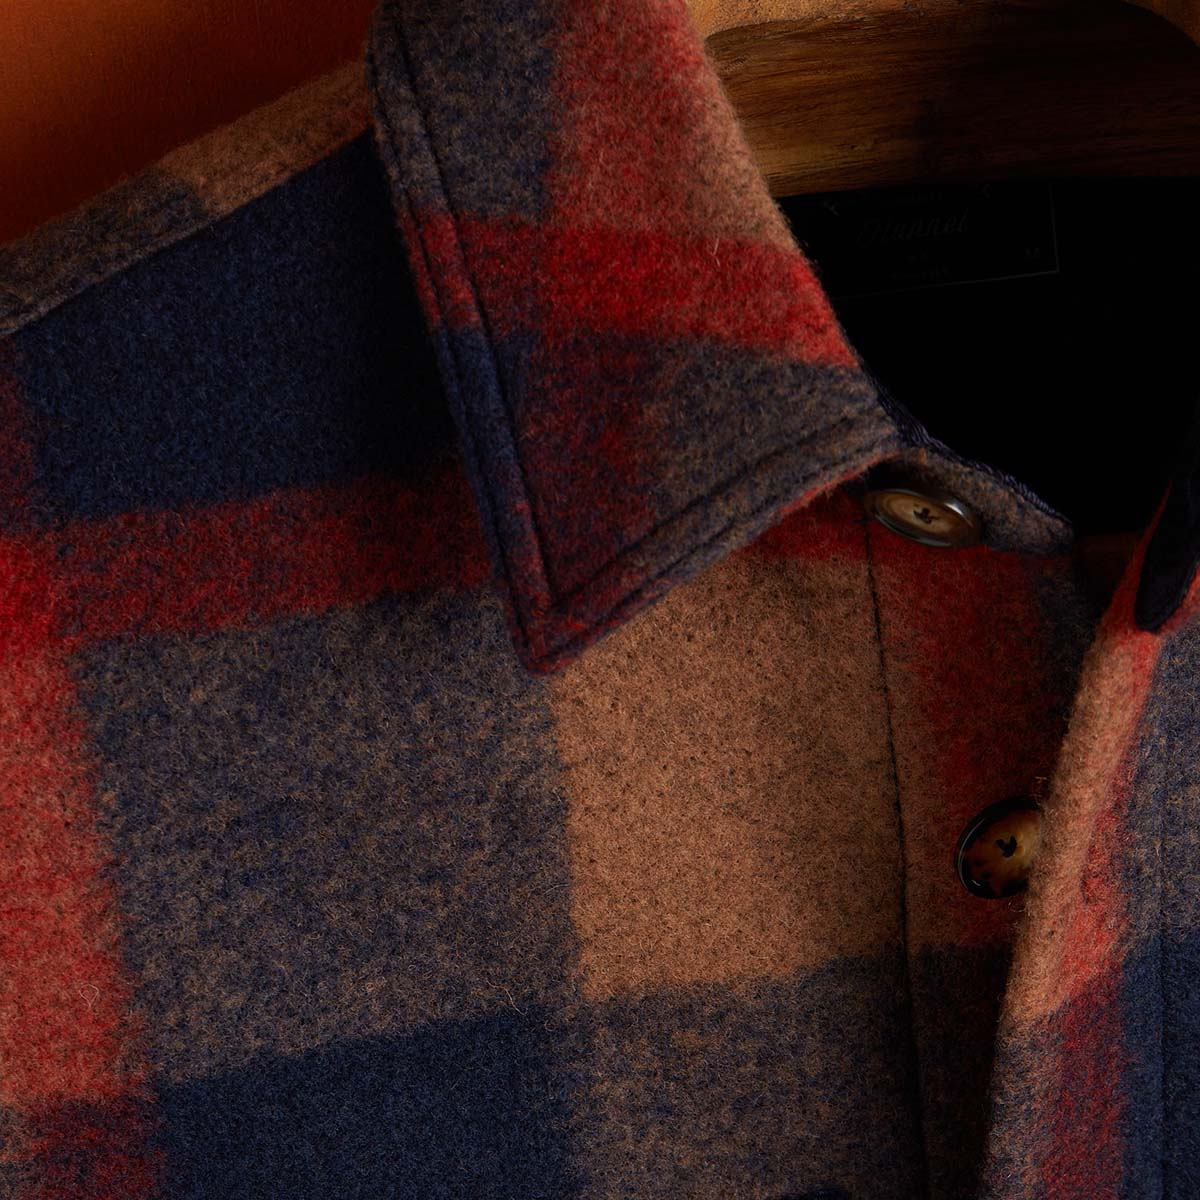 Portuguese Flannel Catch Checked Brushed-Fleece Overshirt, gemaakt van de fijnste exclusieve stoffen